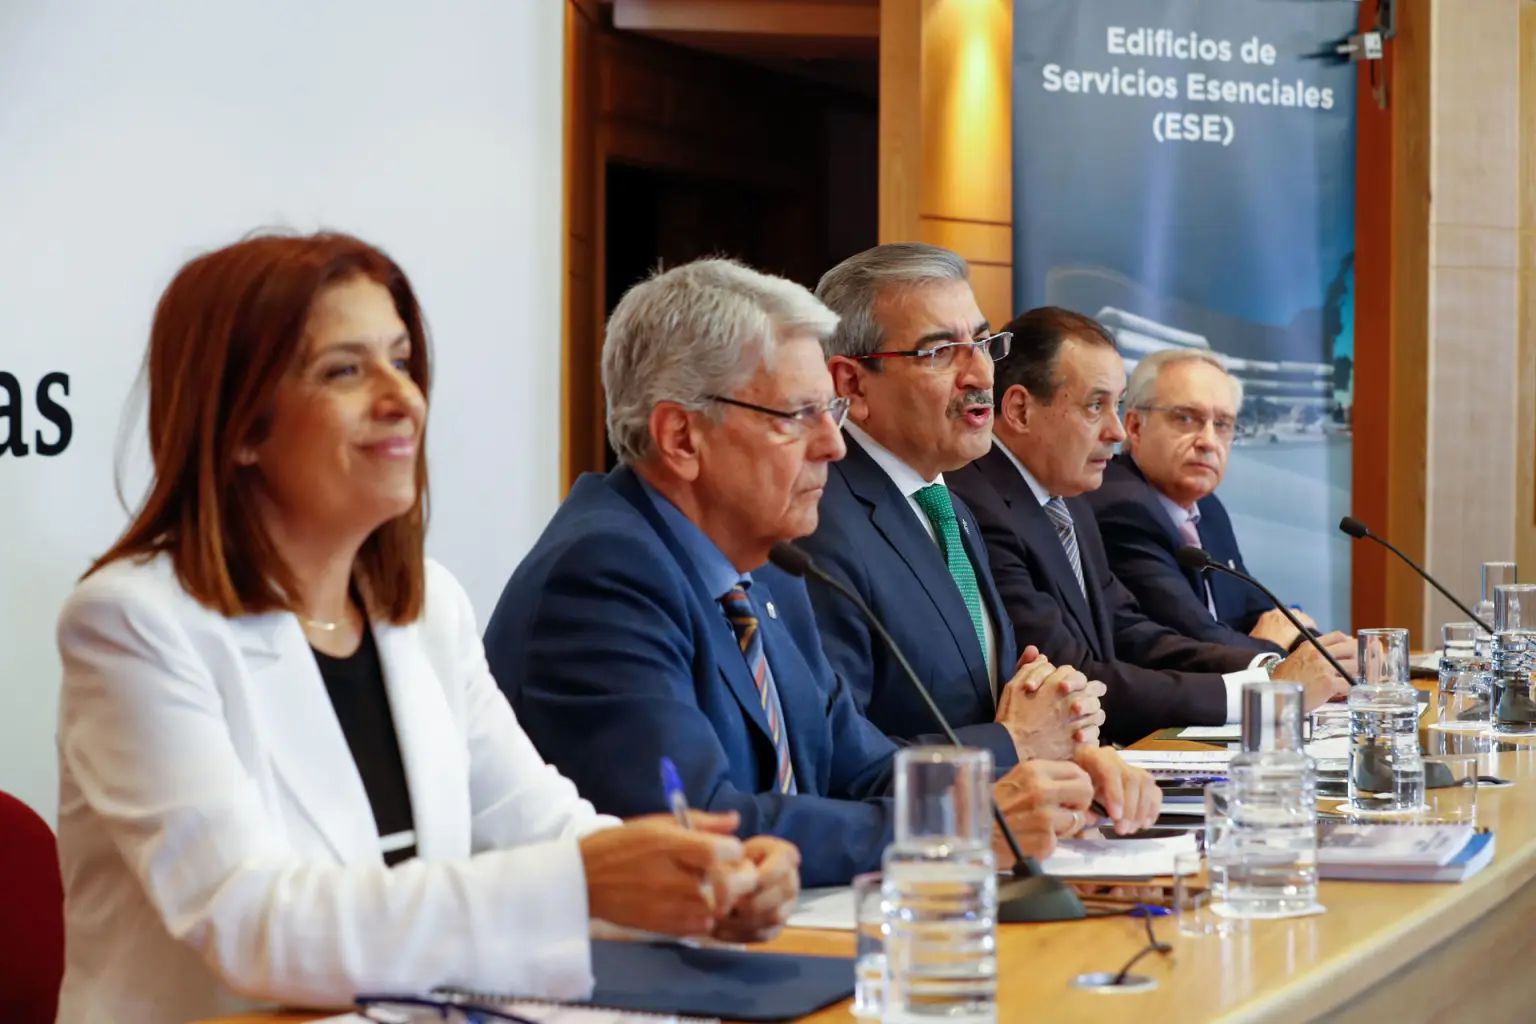 Canarias concentrará Seguridad y Emergencias en dos edificios de nueva construcción en Telde y Santa Cruz de Tenerife